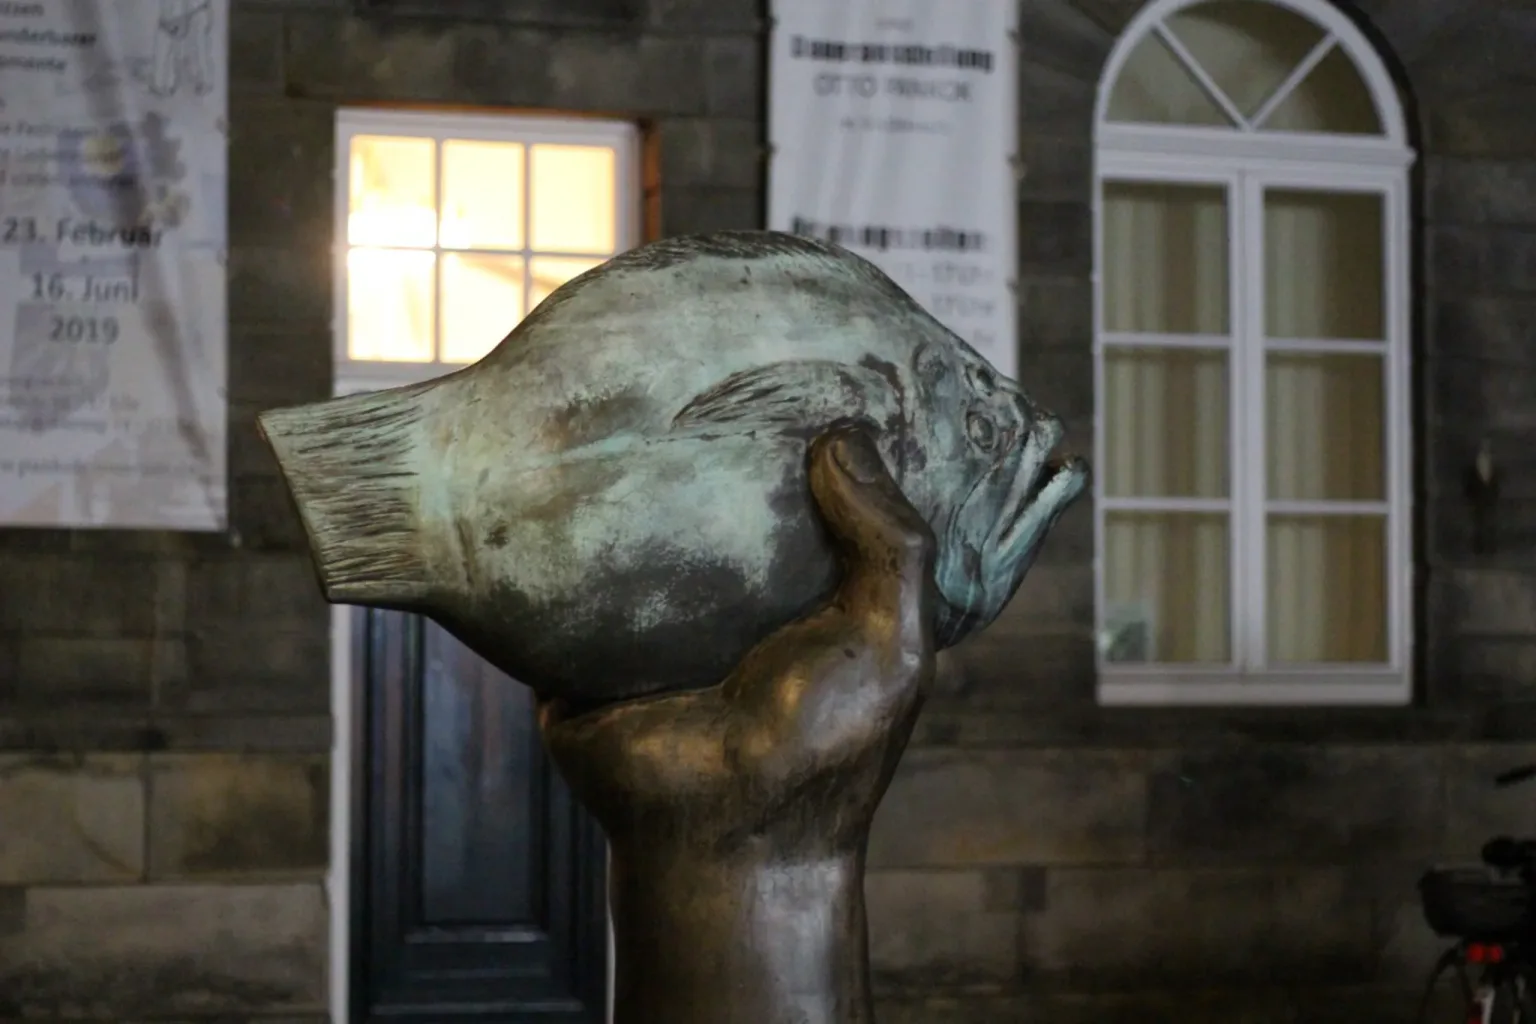 Eine Statue eines Fisches, der von einer menschlichen Figur gehalten wird, wahrscheinlich die Statue einer Person. Die Fischstatue ist recht groß und nimmt einen großen Teil des Bildes ein. Die Statue befindet sich vor dem Museum.